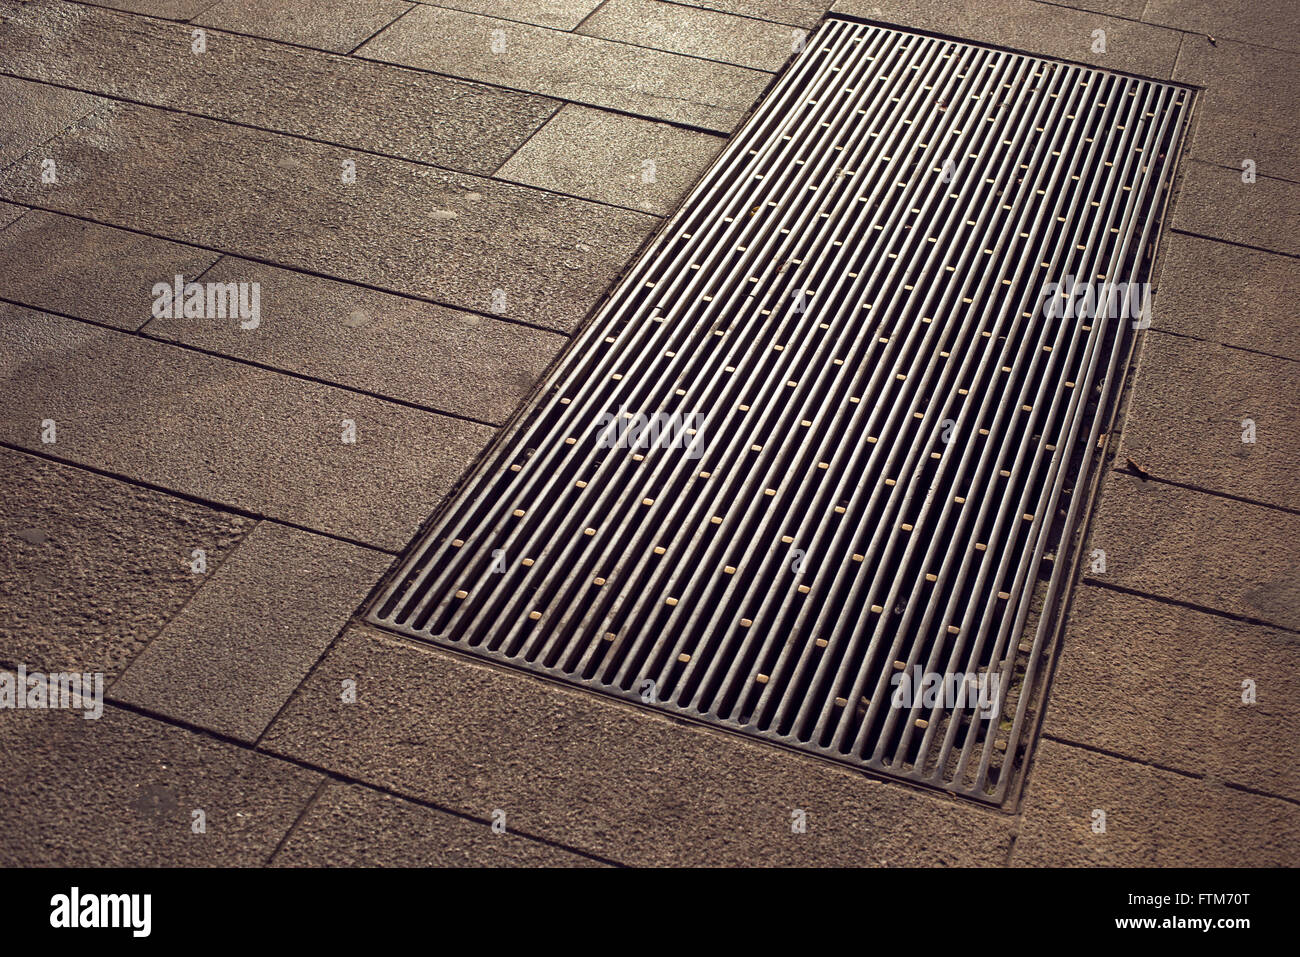 Sol carrelé city pavement avec fragment métallique grande berline de drainage Banque D'Images